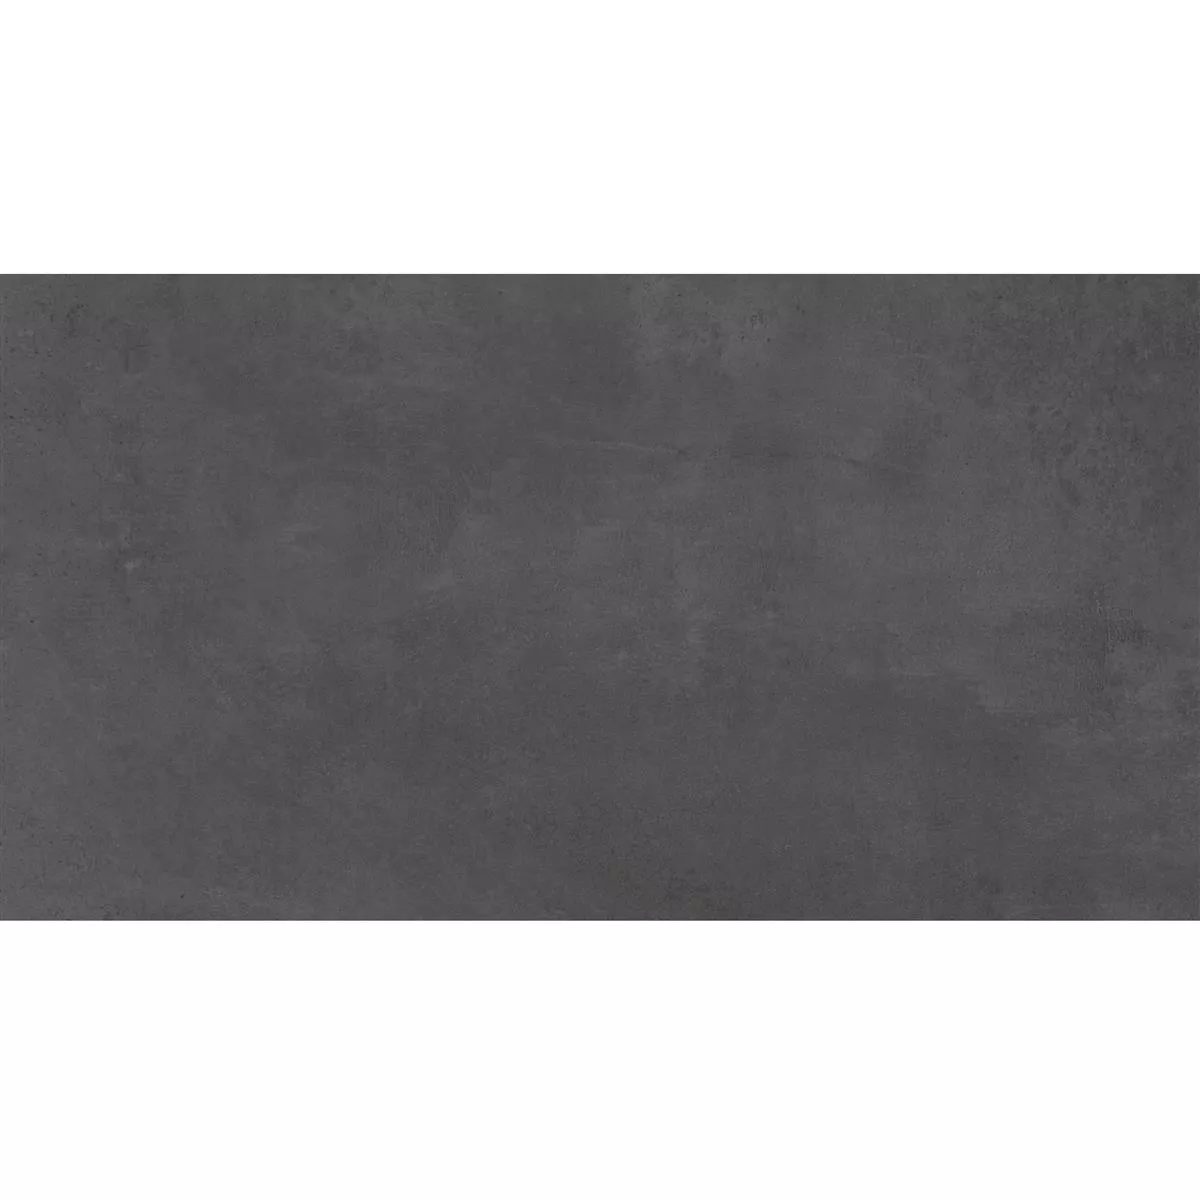 Vzorek Podlahové Dlaždice Assos Betonový Vzhled R10/B Antracitová 30x60cm